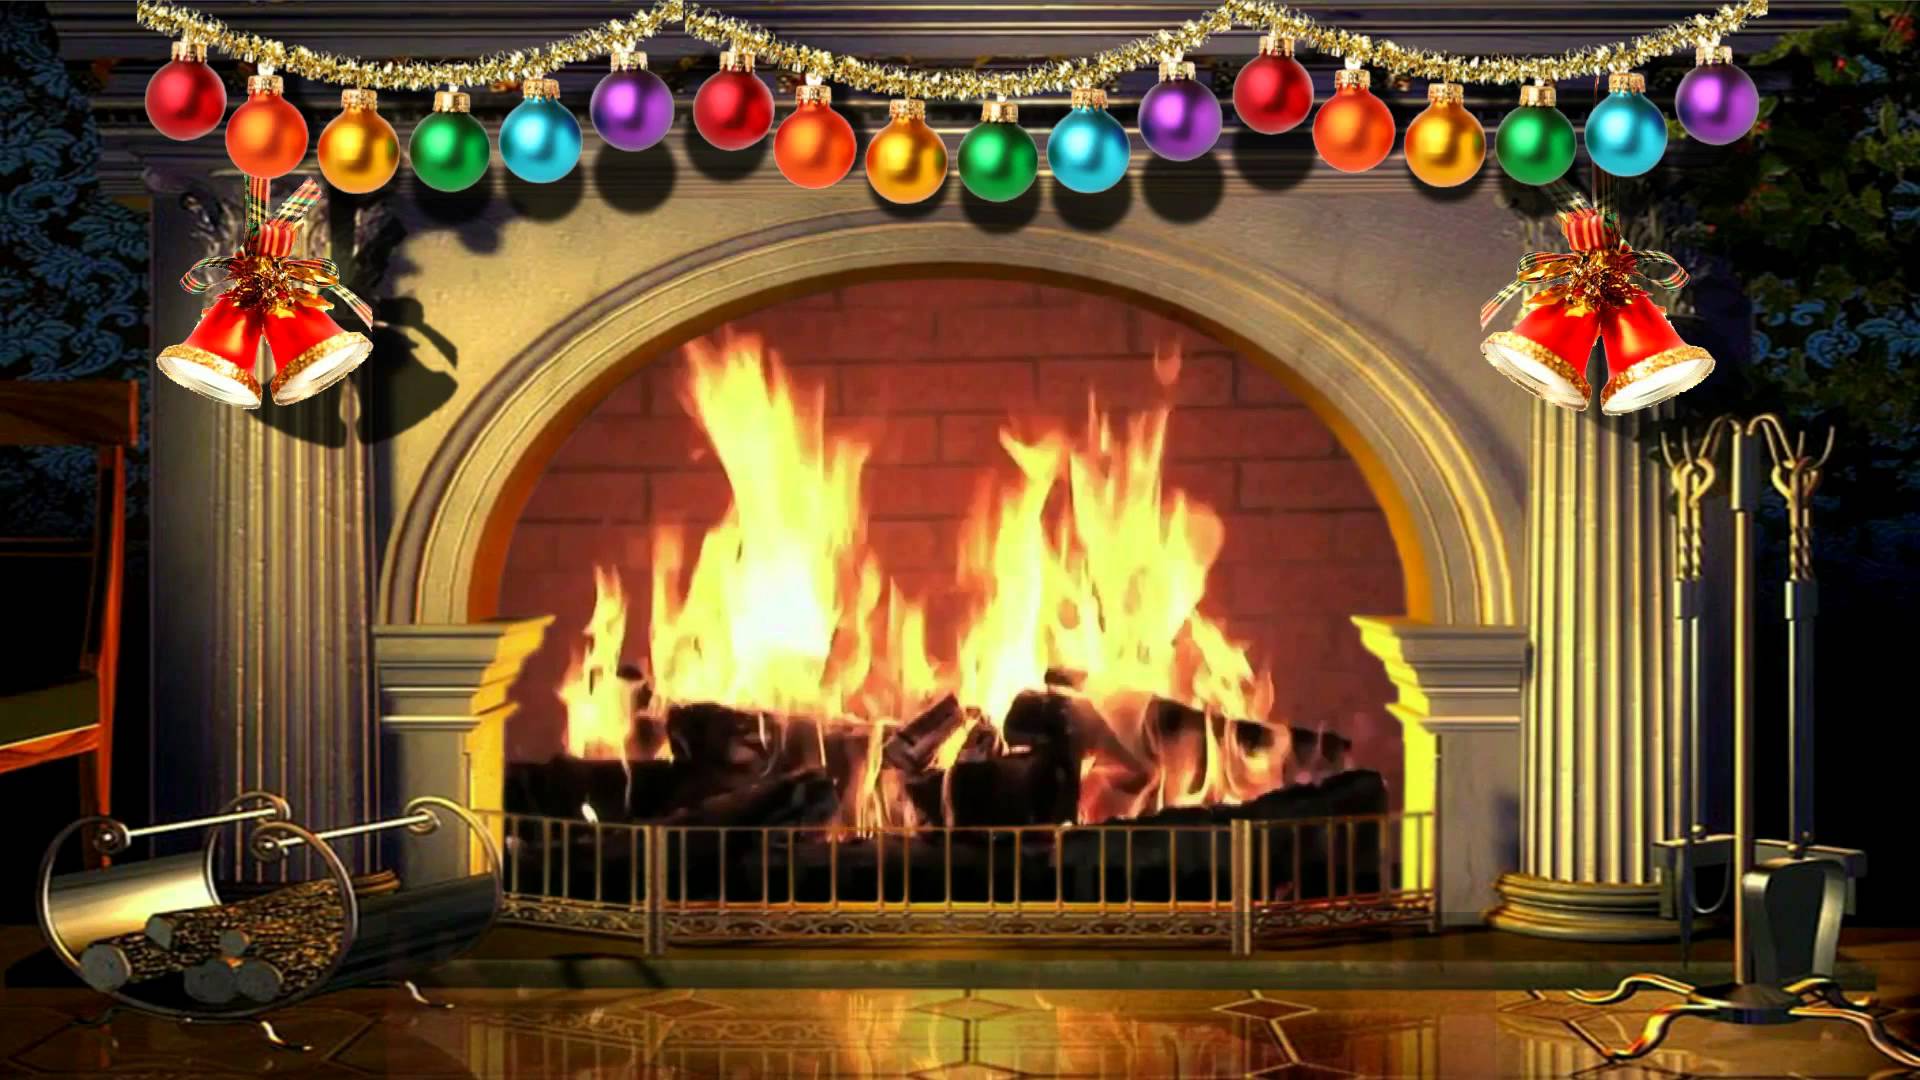 Tuyệt vời cho mùa Giáng sinh năm nay! Hãy tải ngay video nền bếp lửa Giáng sinh ảo miễn phí để thêm phần sinh động và đa dạng cho màn hình của bạn. Hình ảnh sống động giúp bạn tận hưởng cảm giác trọn vẹn của đêm Giáng sinh trong nhà một cách tuyệt vời.